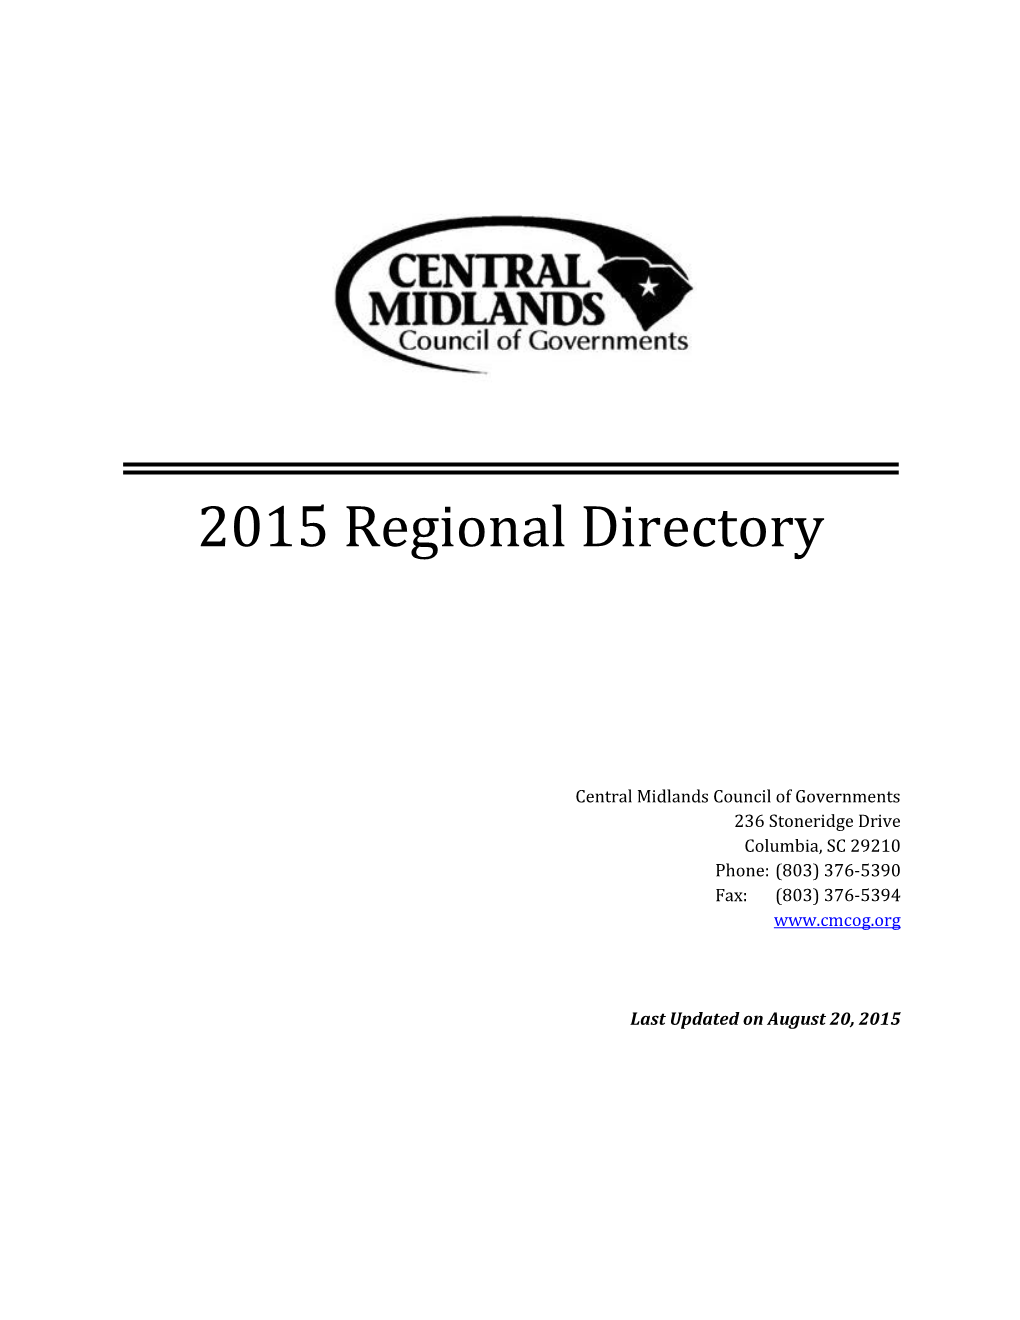 Regional Directory